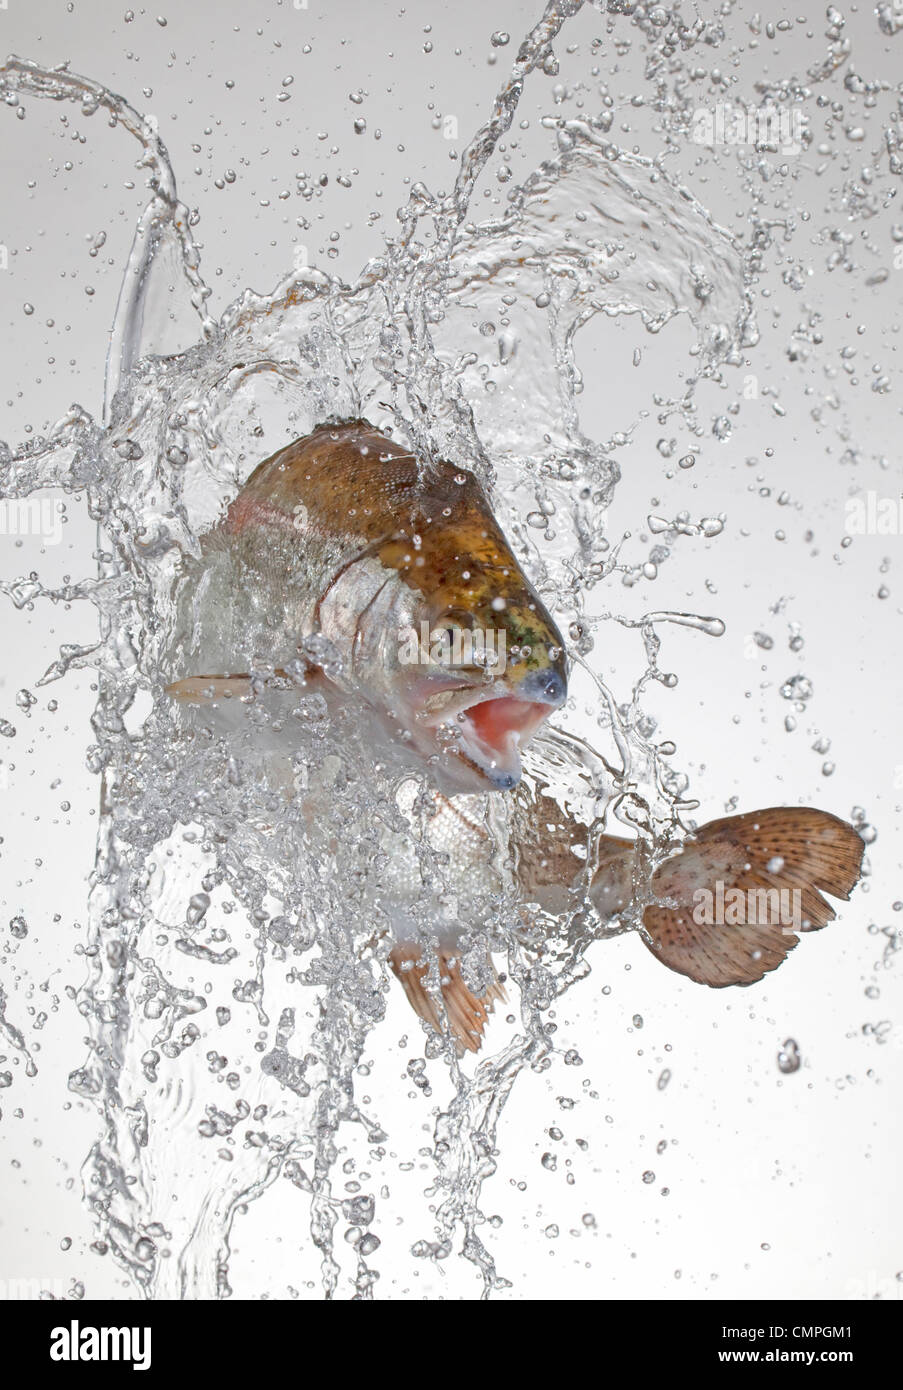 Regenbogenforelle mit springen spritzt Wasser Stockfoto